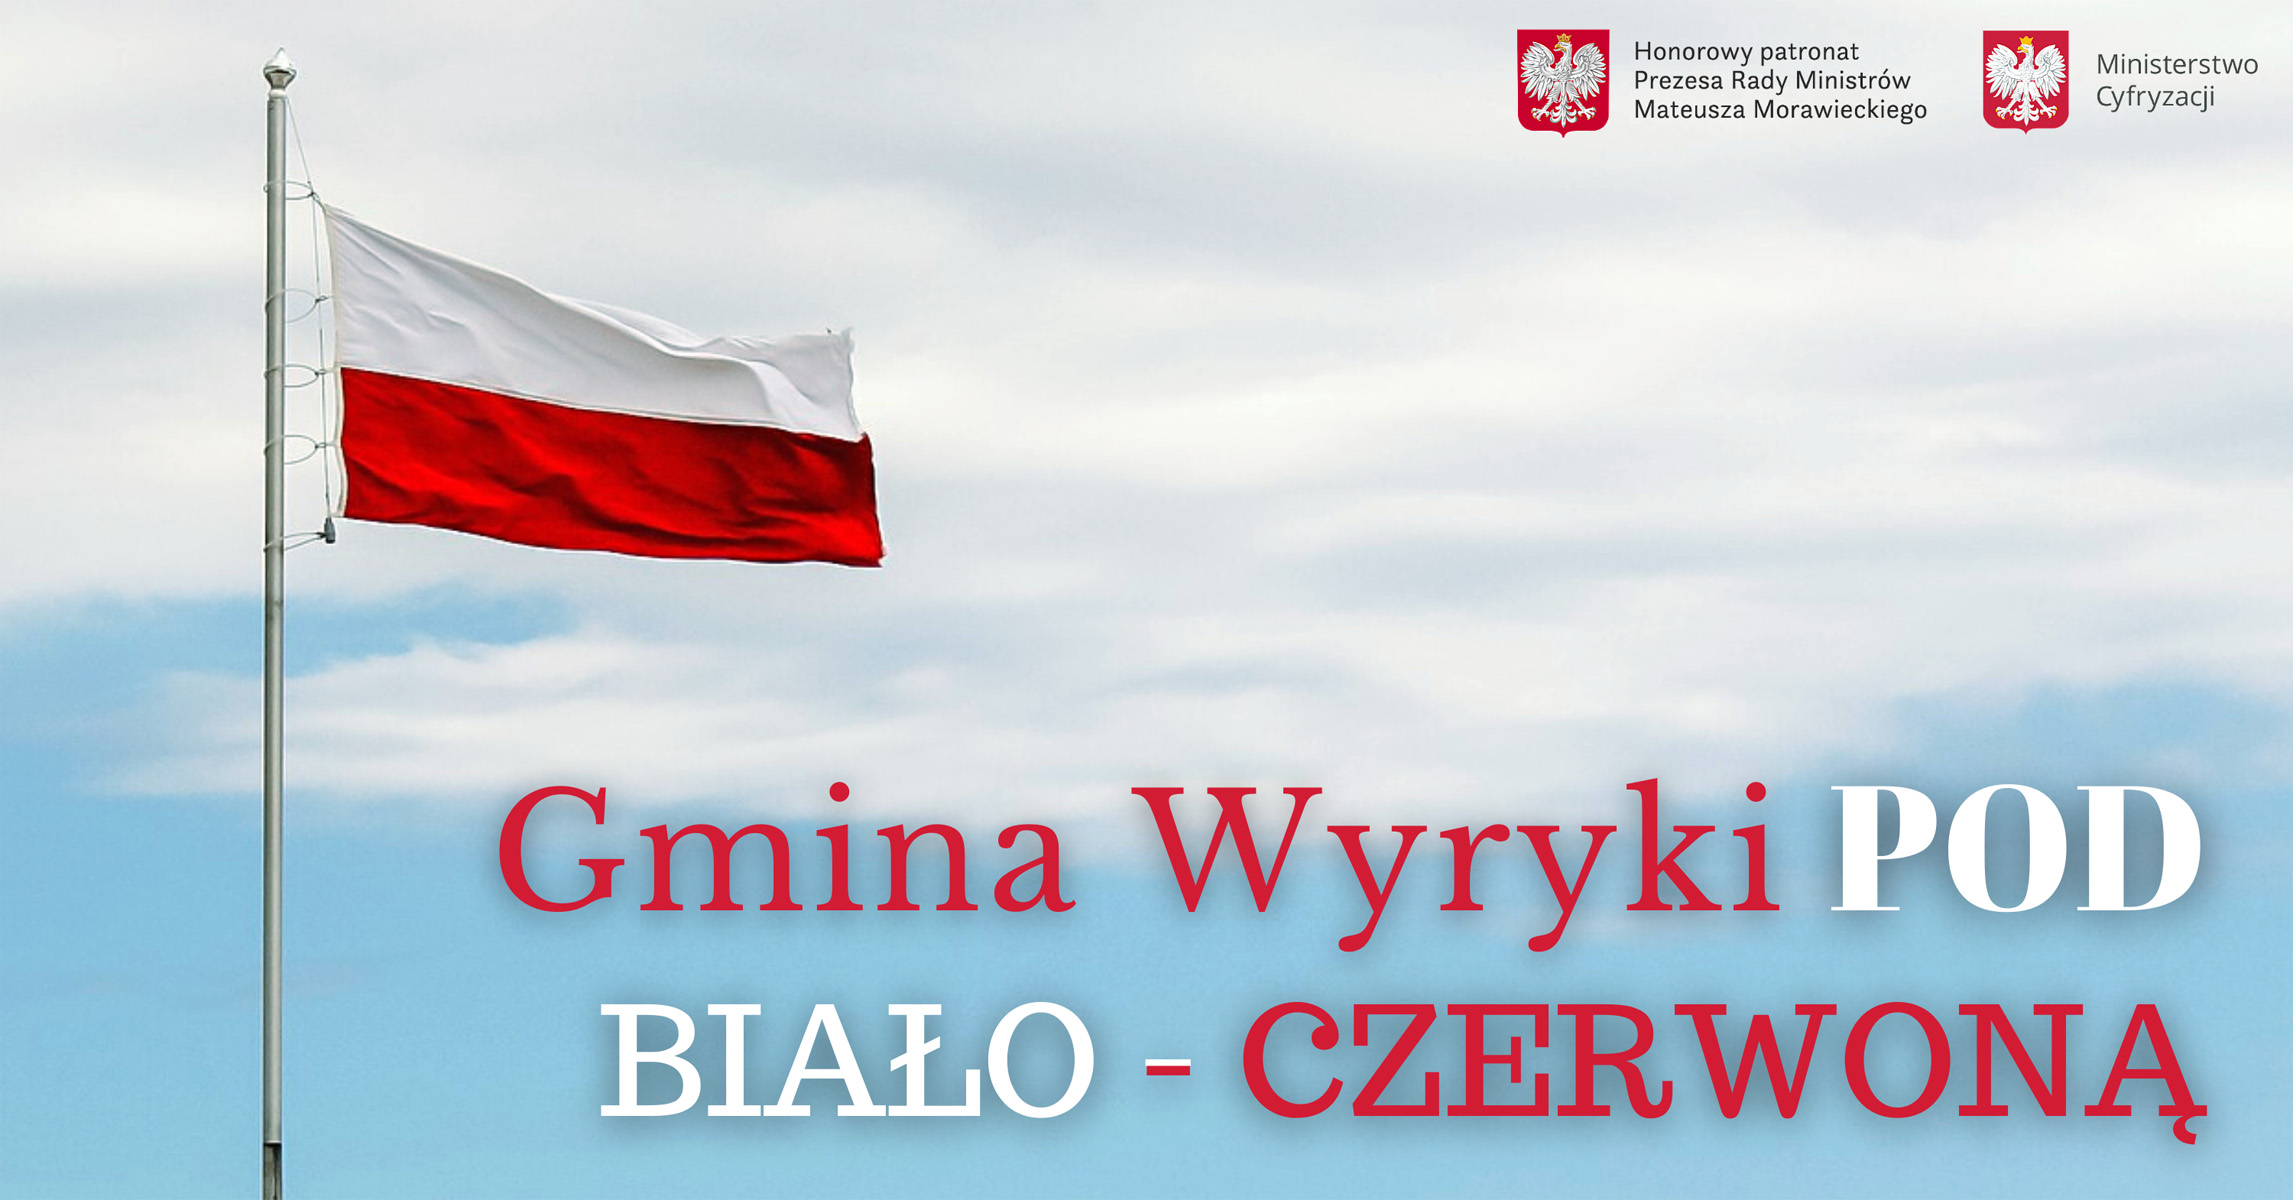 Po lewej stronie maszt z flagą Rzeczypospolitej Polskiej, z prawej górnej stronie logo Prezesa Rady Ministrów oraz Ministerstwa Cyfryzacji, na dole tekst „Gmina Wyryki POD BIAŁO-CZERWONĄ”